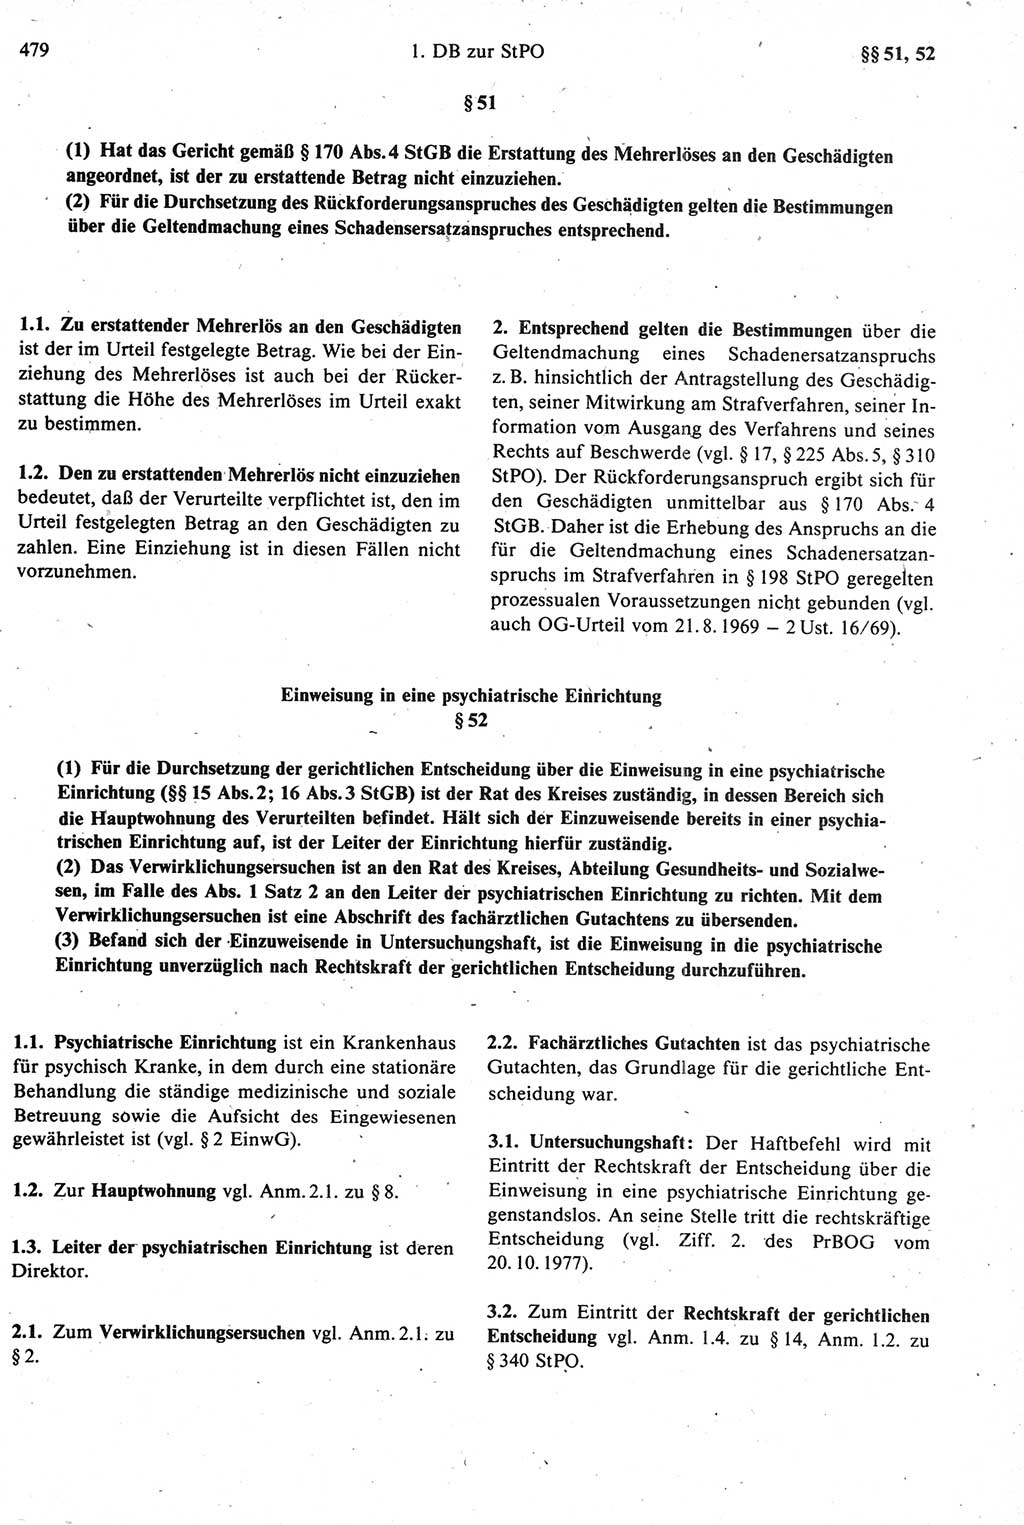 Strafprozeßrecht der DDR [Deutsche Demokratische Republik], Kommentar zur Strafprozeßordnung (StPO) 1987, Seite 479 (Strafprozeßr. DDR Komm. StPO 1987, S. 479)